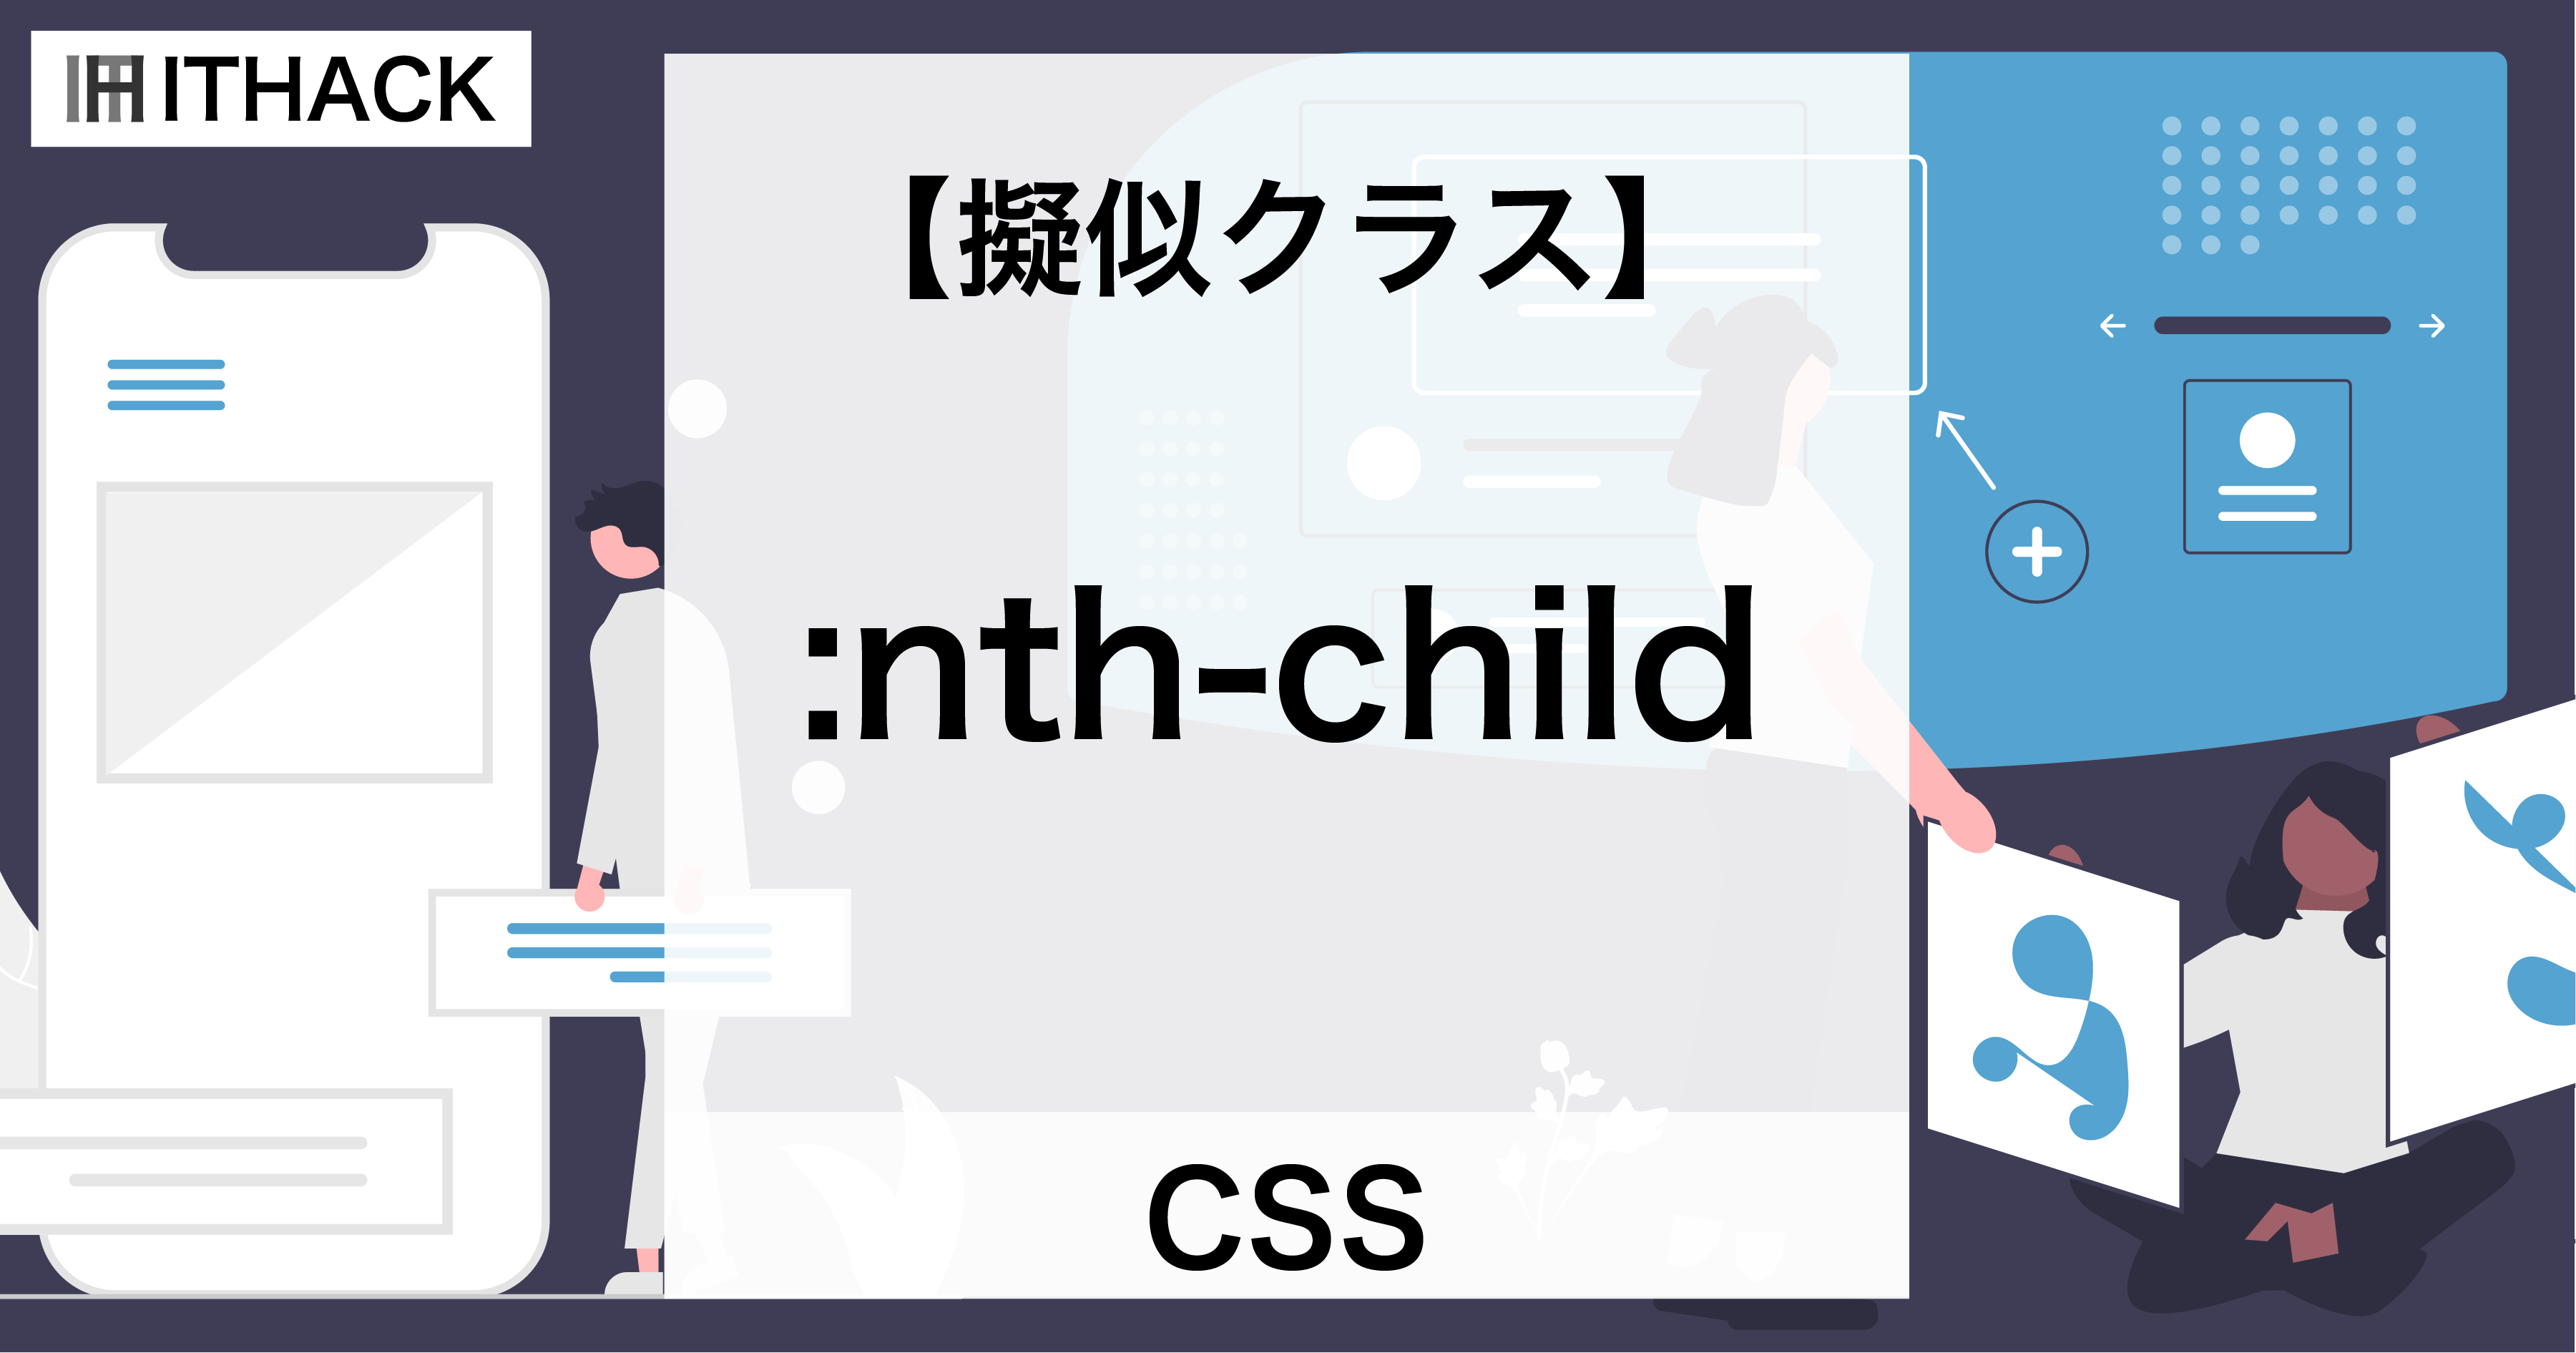 【CSS】:nth-child（擬似クラス） - N番目の要素